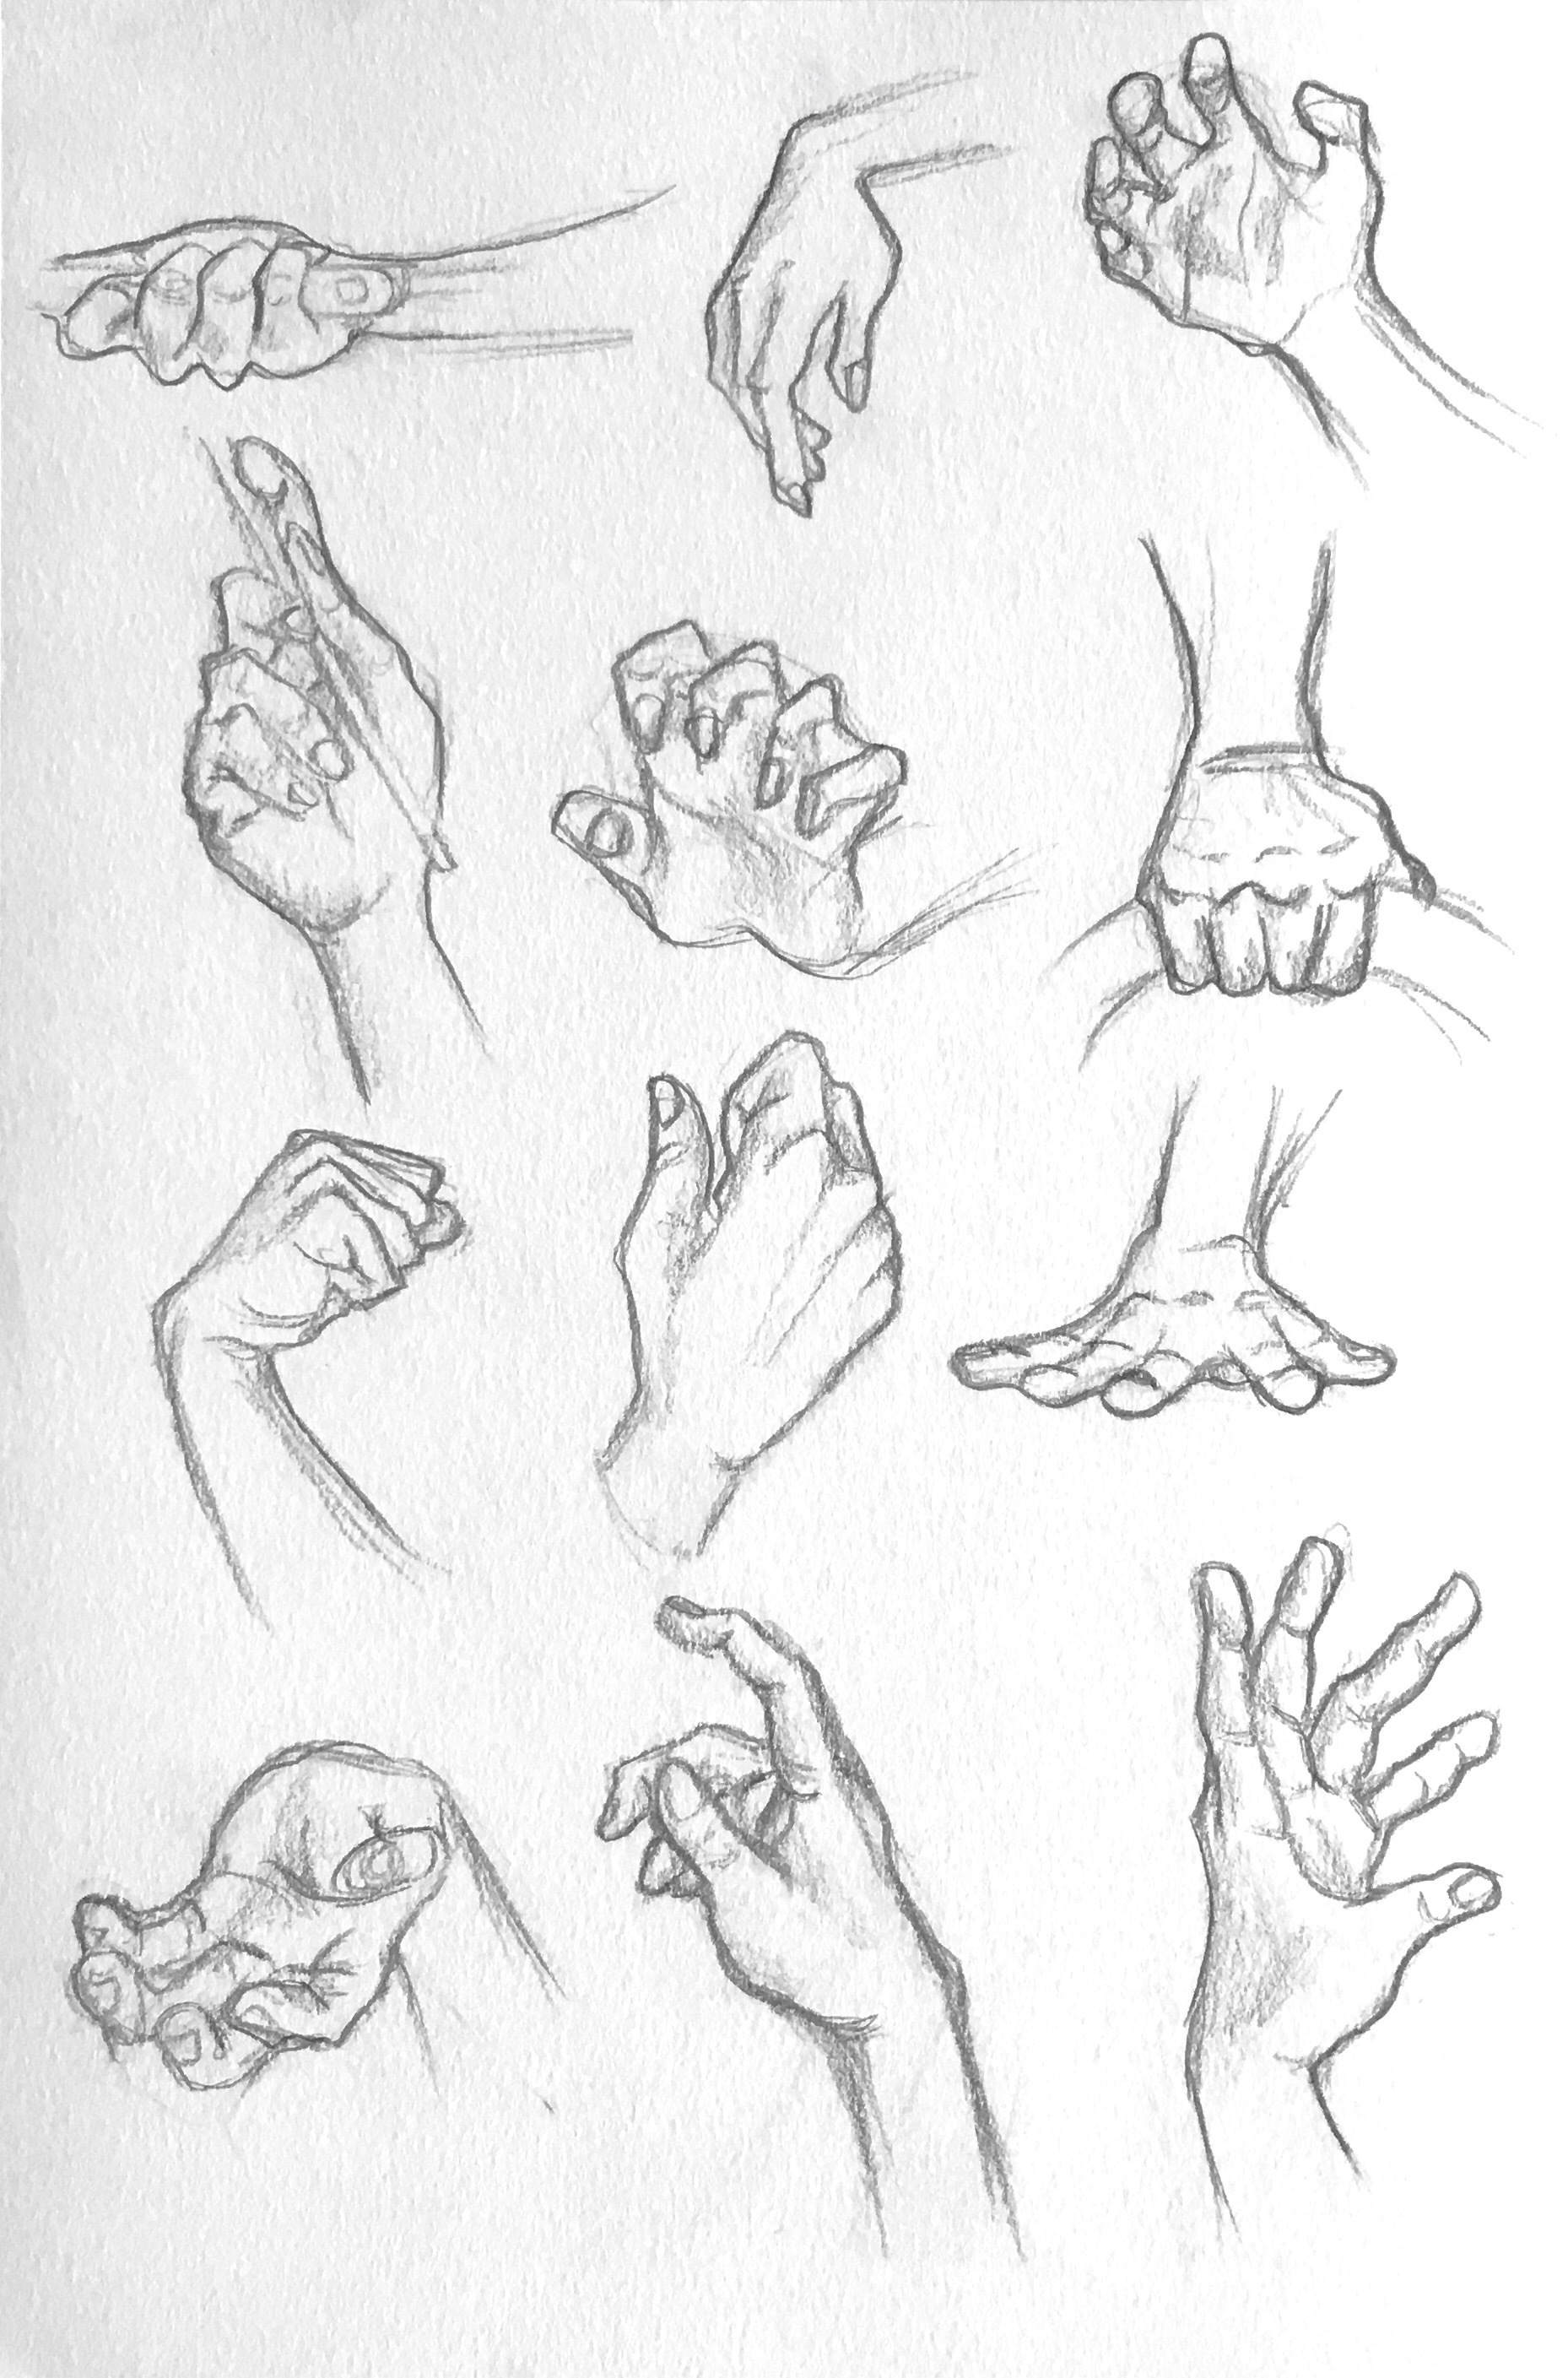 HandsSketch